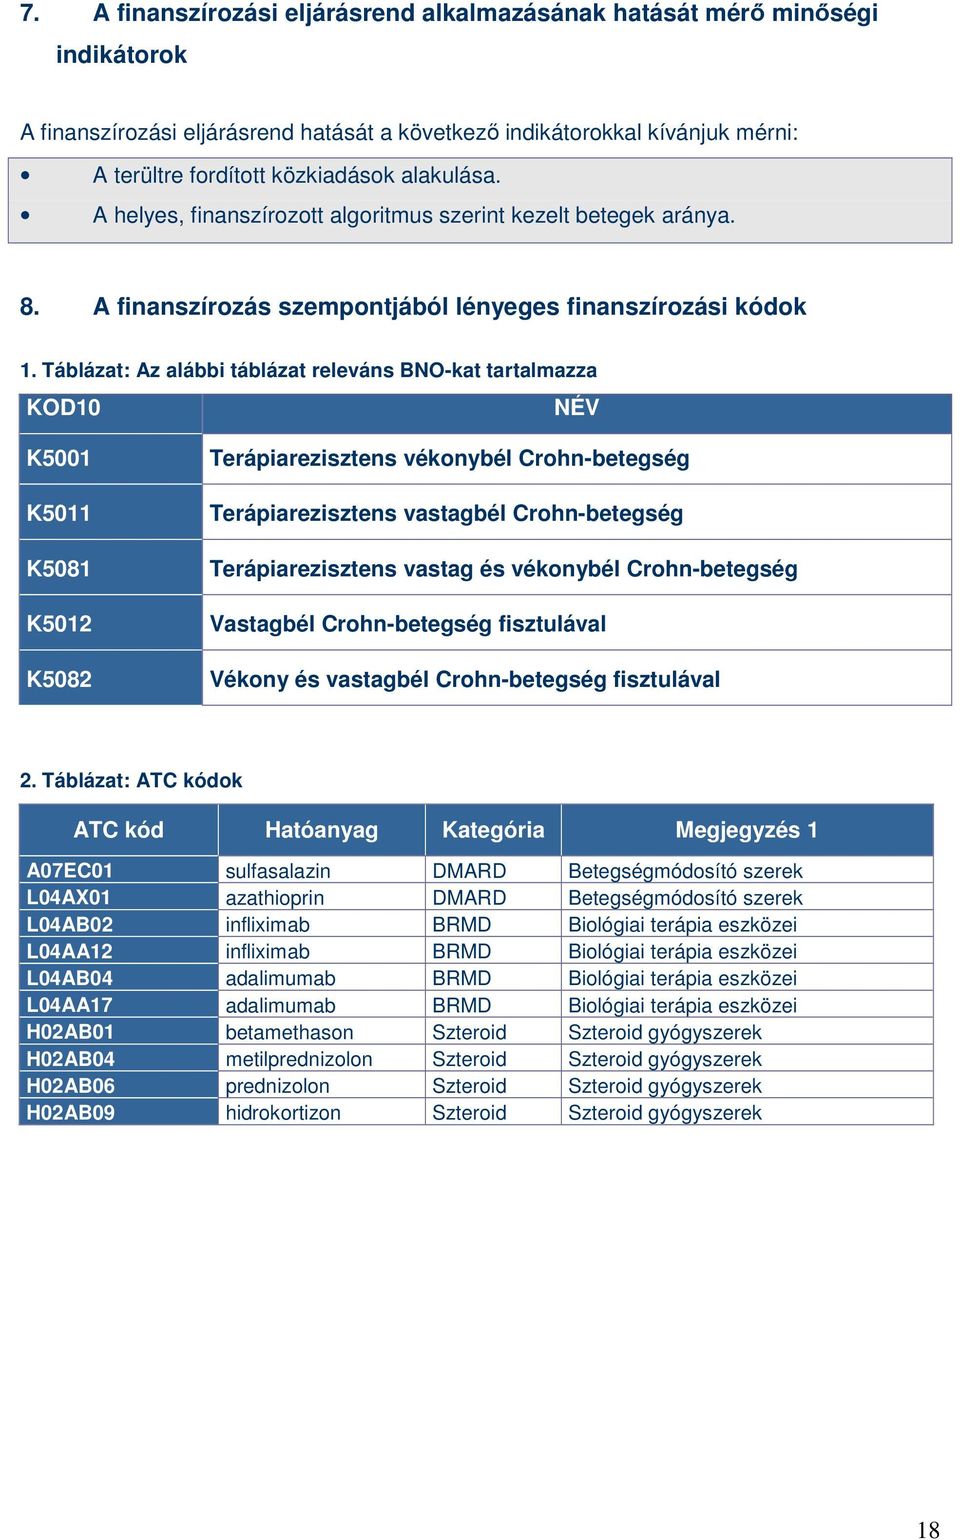 Táblázat: Az alábbi táblázat releváns BNO-kat tartalmazza KOD10 NÉV K5001 K5011 K5081 K5012 K5082 Terápiarezisztens vékonybél Crohn-betegség Terápiarezisztens vastagbél Crohn-betegség